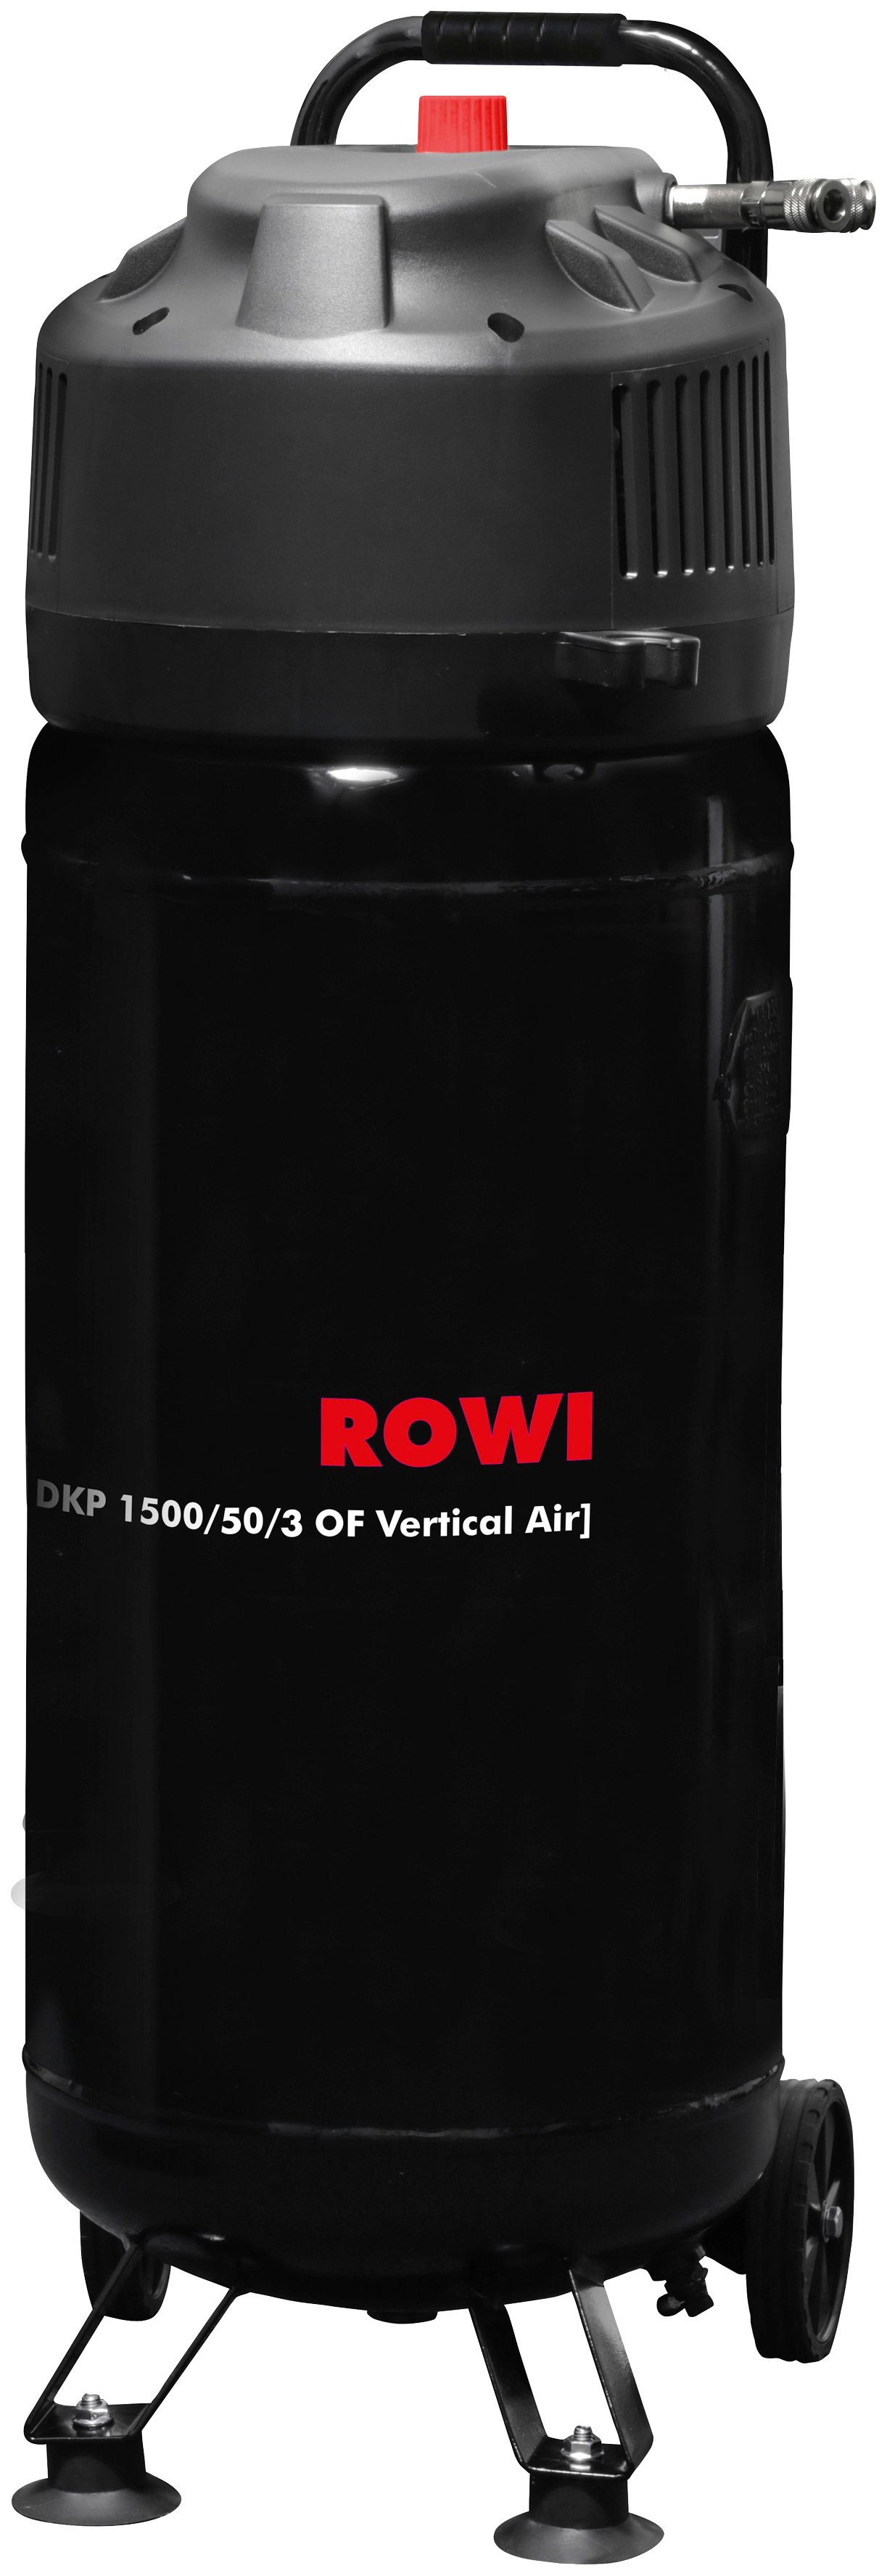 10 Vertical Kompressor l 50 ROWI bar, Air, 1500/50/3 max. OF 1500 W, DKP